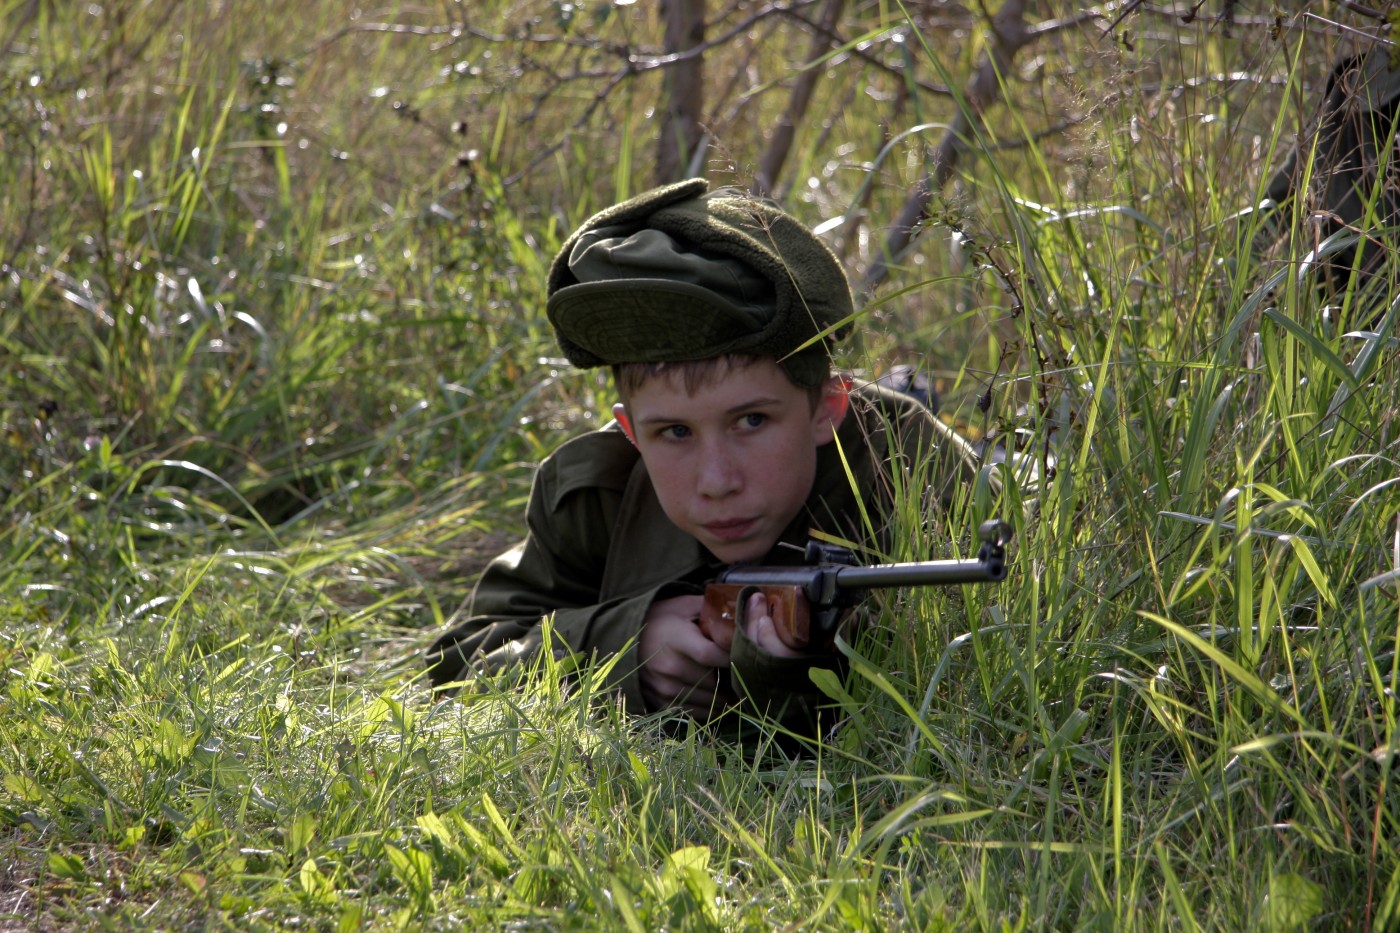 Foto Anak Anak Lagi Pegang Senjata DUNIA CORAT CORET